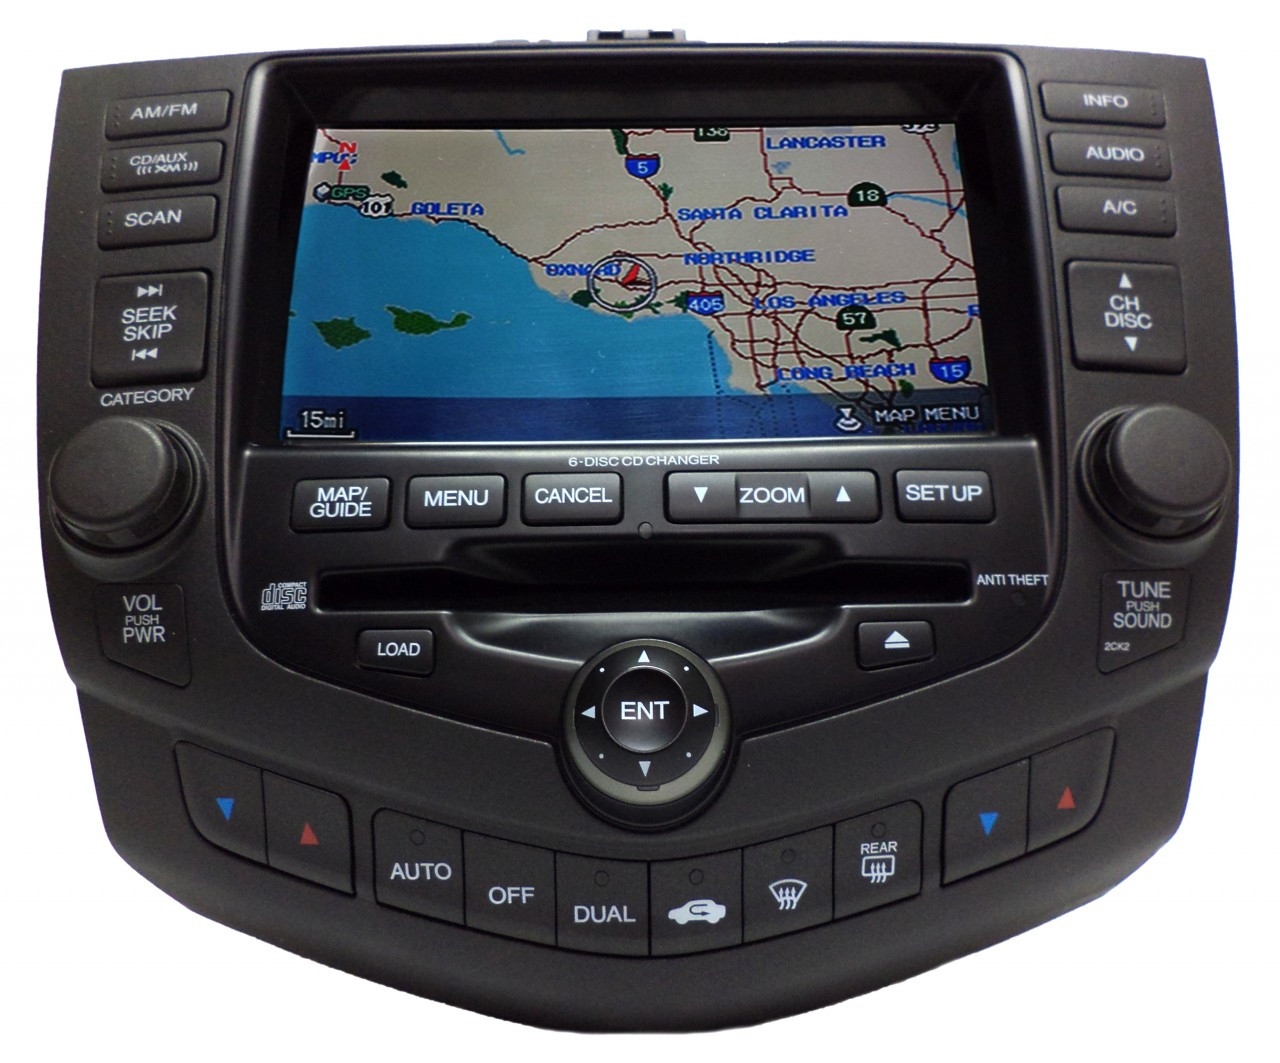 2005 Honda accord navigation system repair